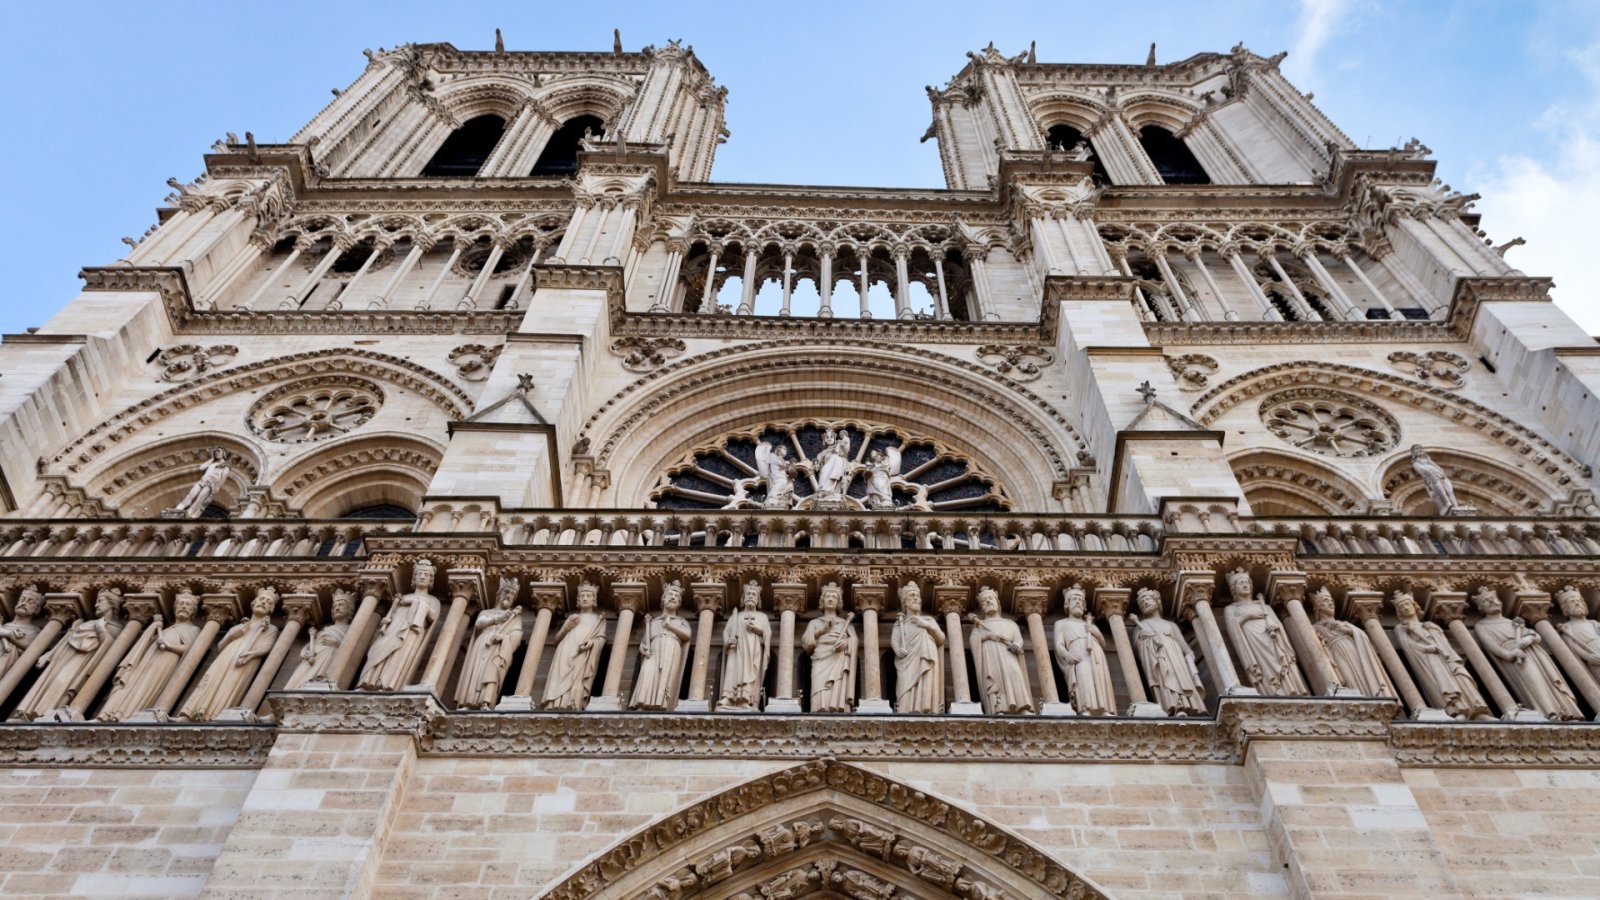 La cathédrale Notre-Dame dévoile une nouvelle flèche couronnée d'un coq d'or